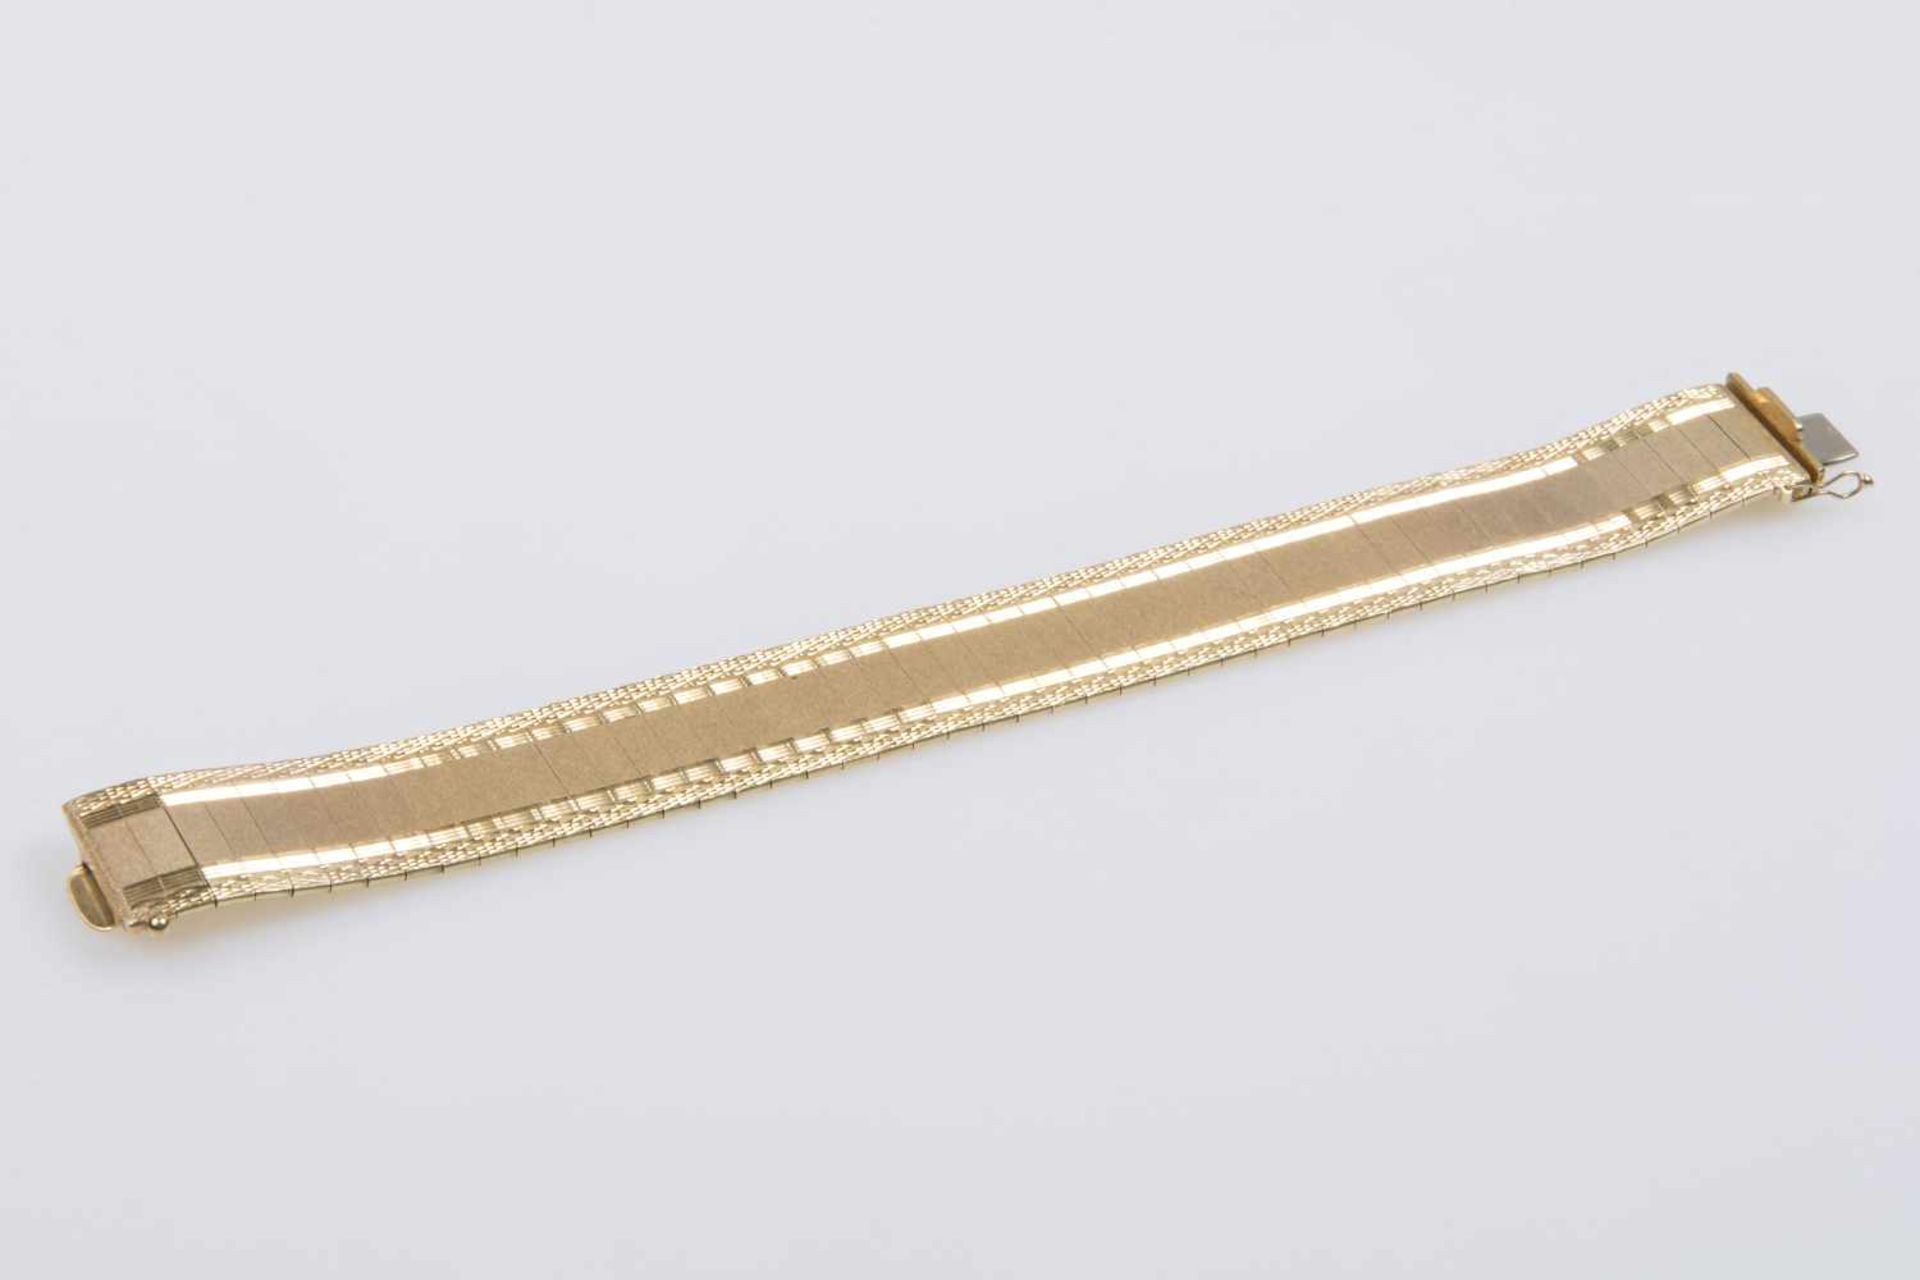 ArmbandGold 585, Steckschließe, Sicherheitsverschluss, Länge 18,5 cm, teilweise mattiert und